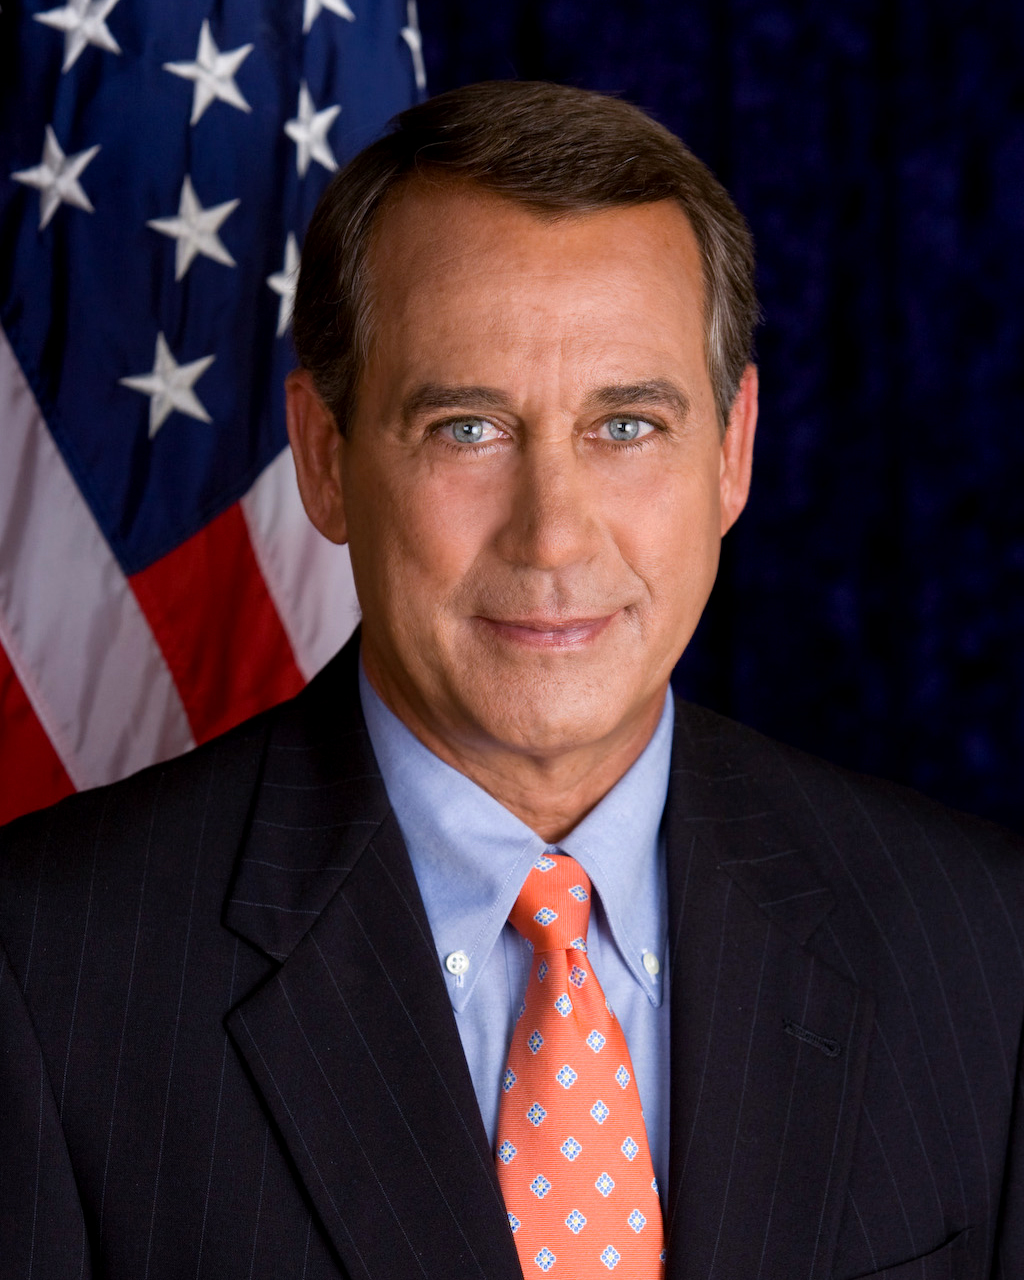 http://upload.wikimedia.org/wikipedia/commons/7/7d/John_Boehner_official_portrait.jpg